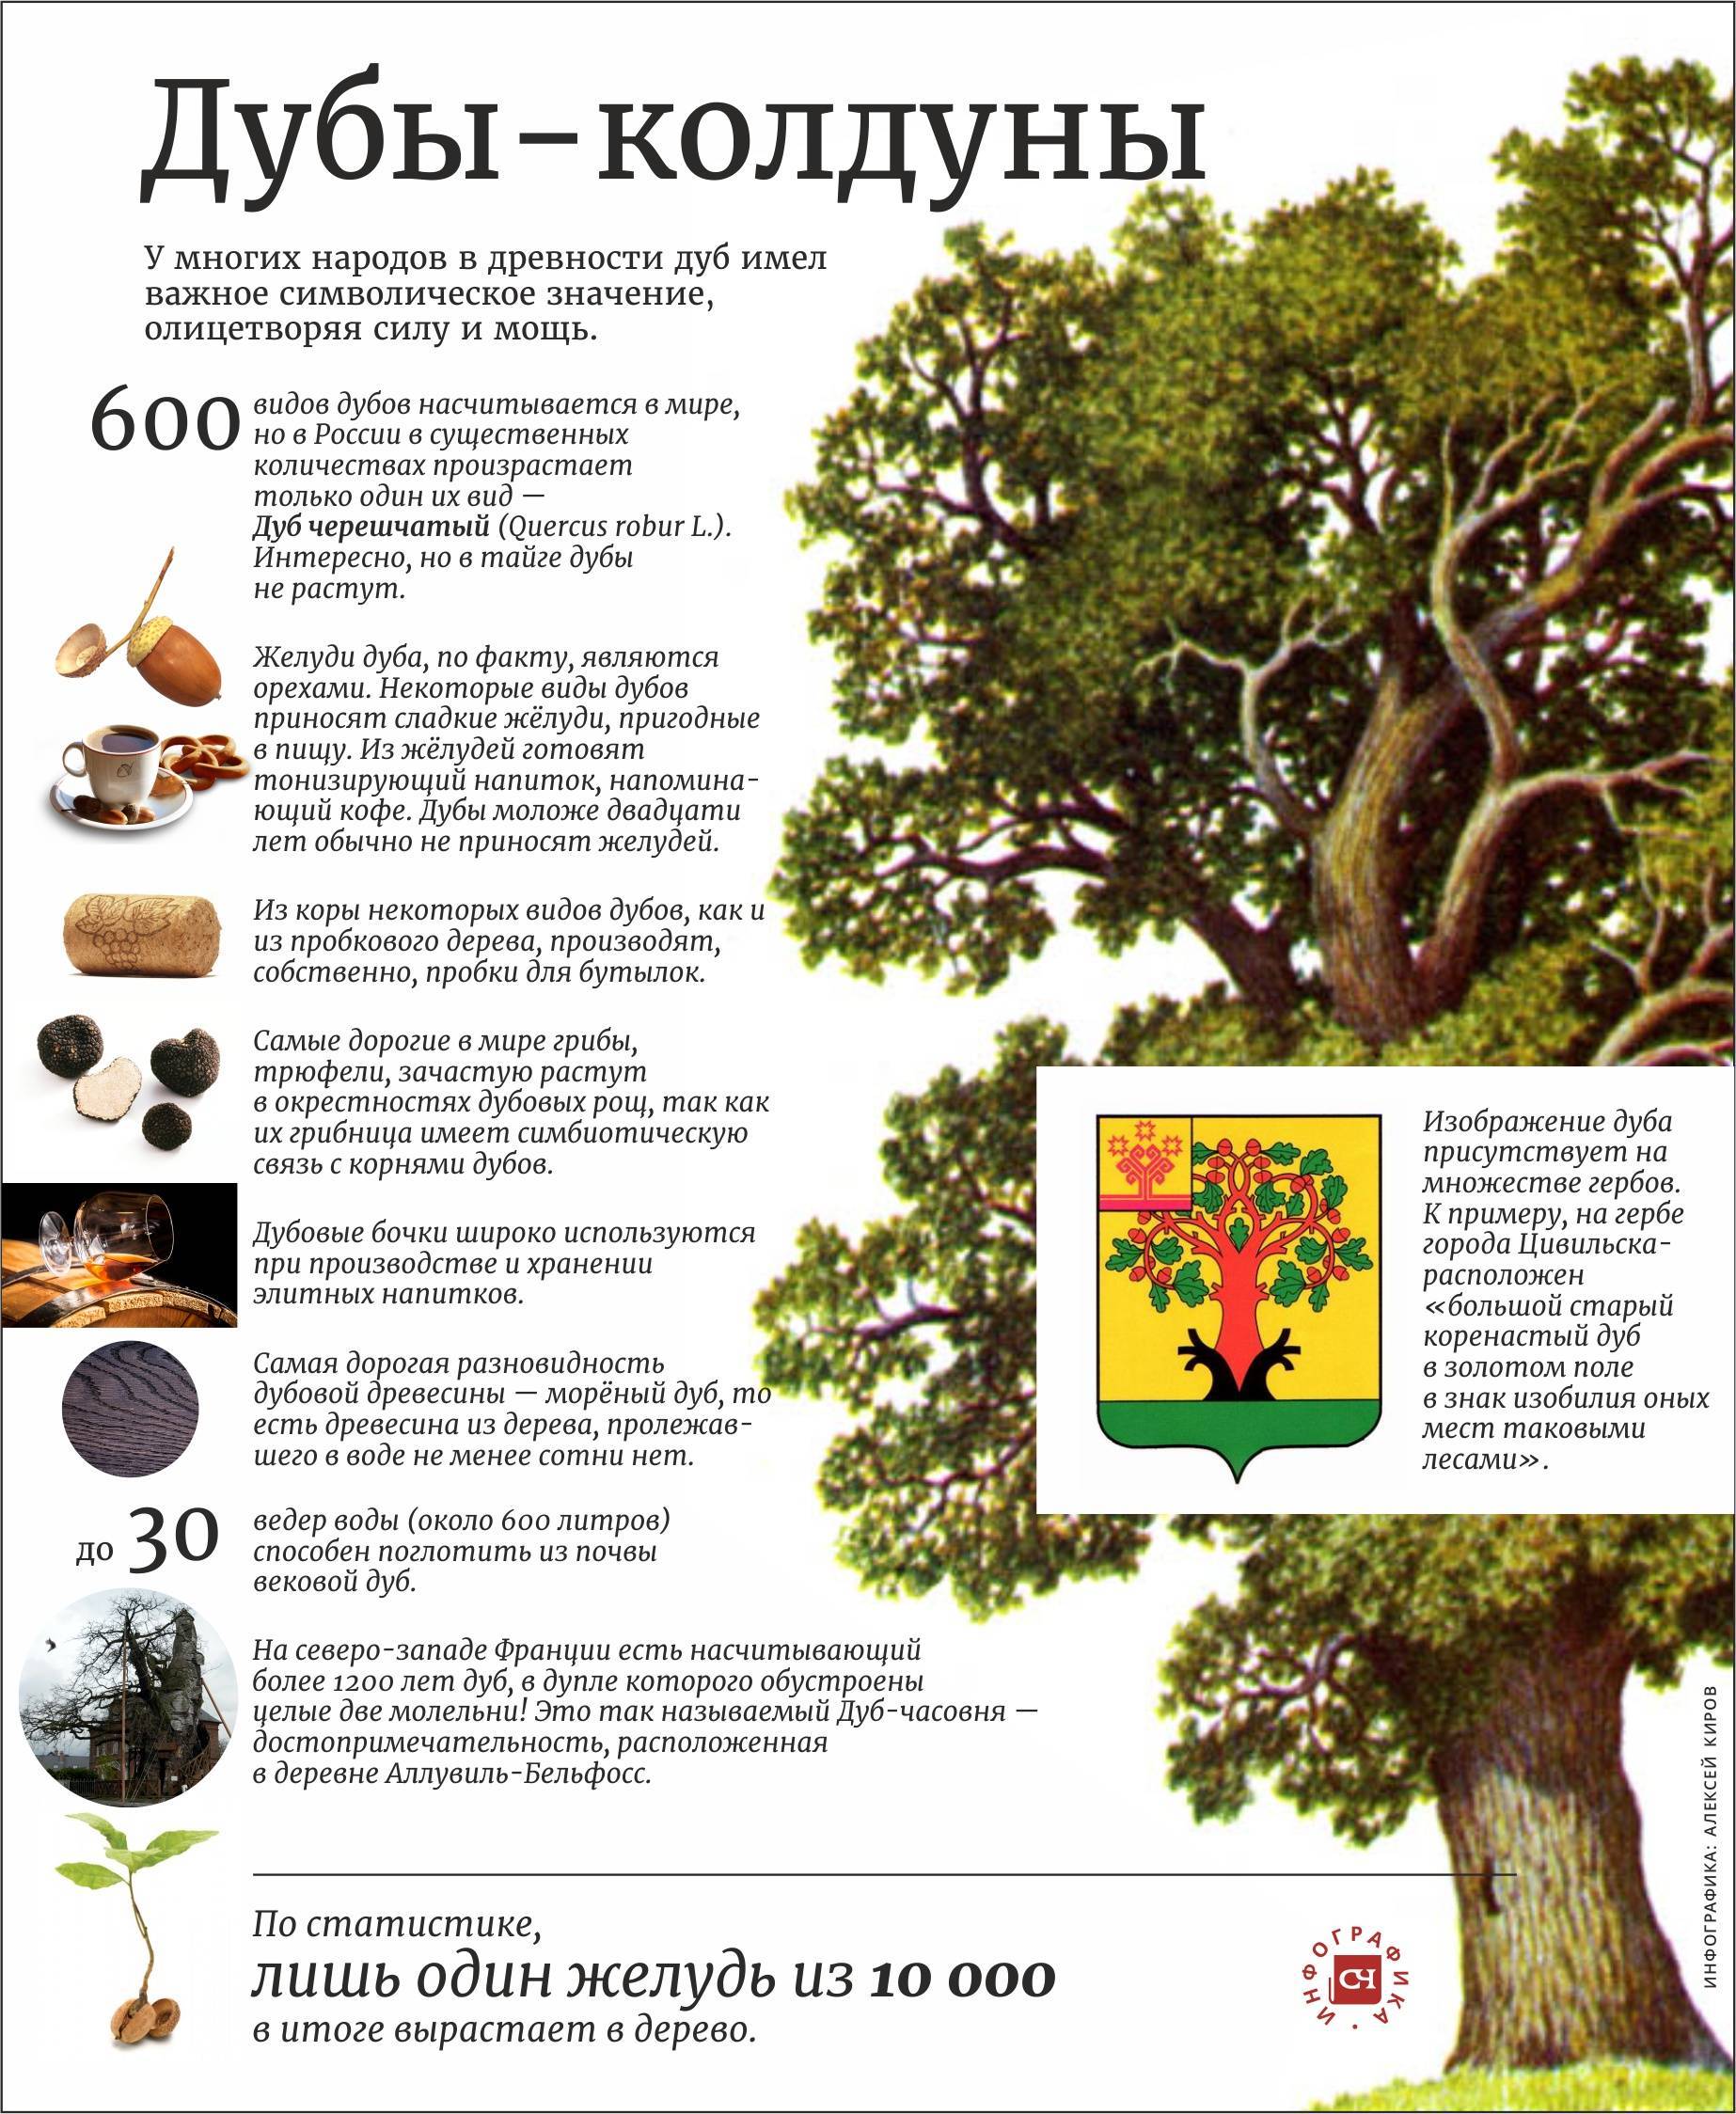 Описание дуба. Интересные факты о дубе. Дуб дерево описание. Удивительные факты про дуб.